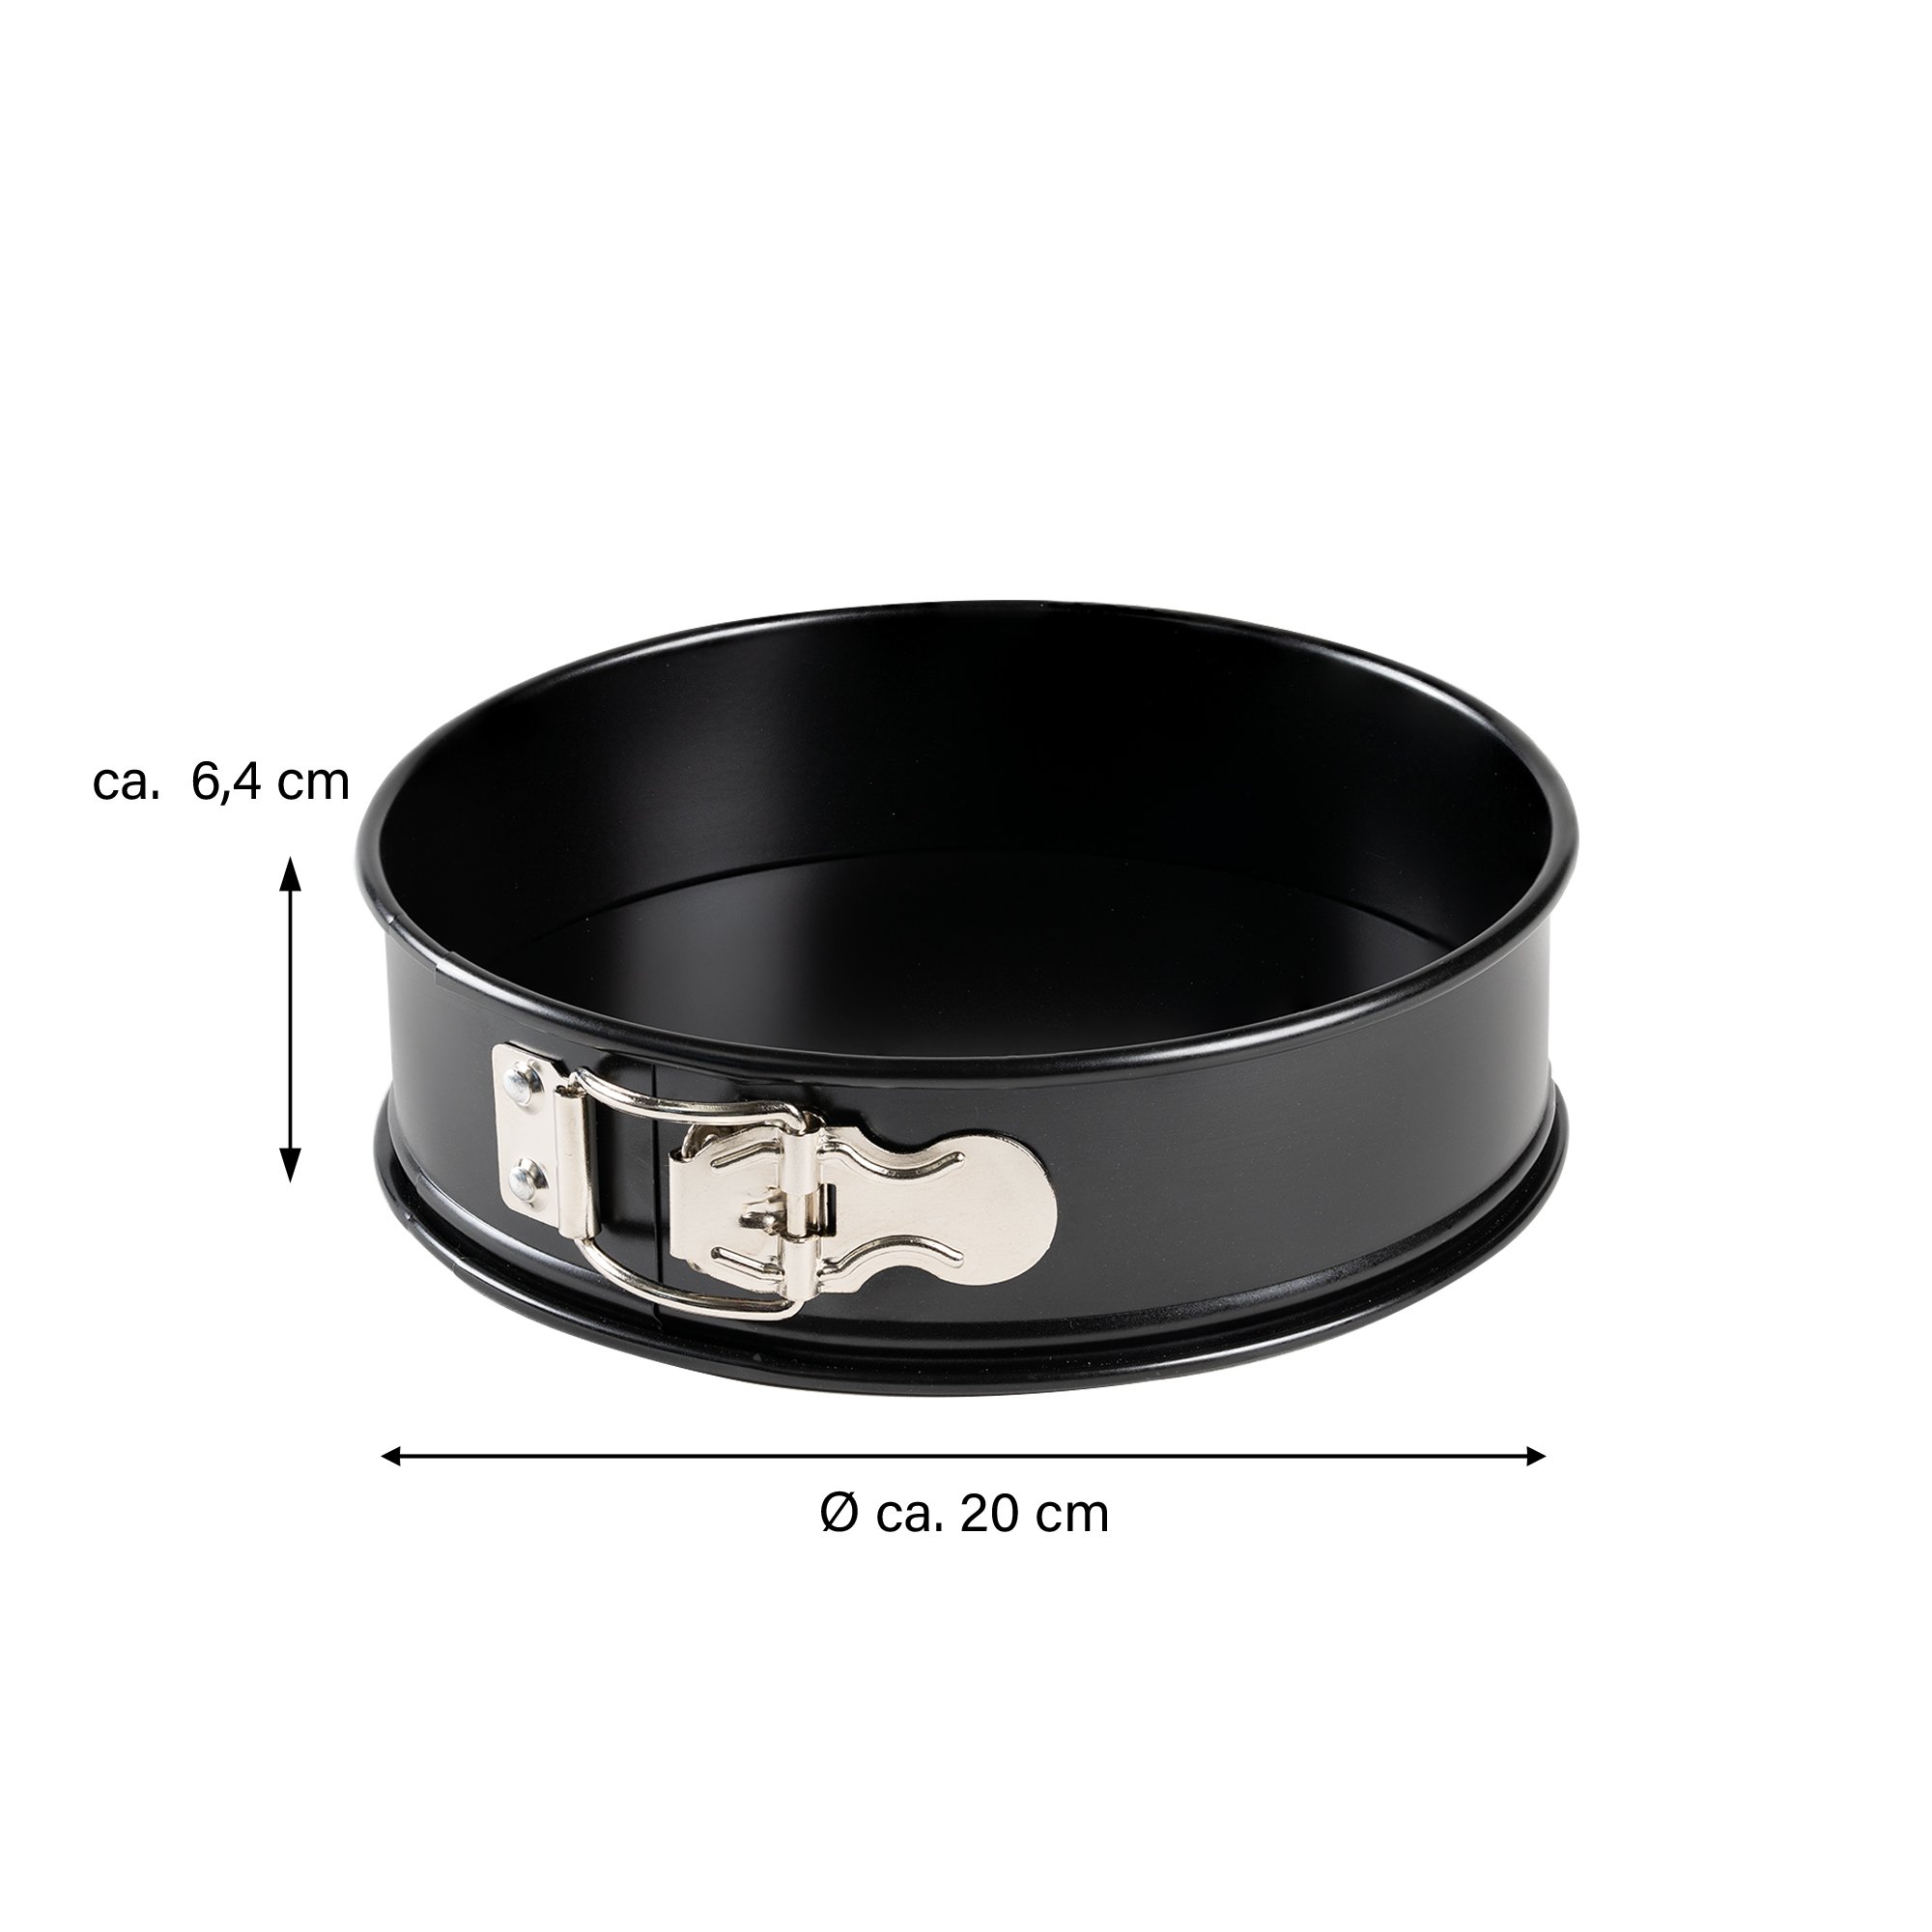 Freyersbacher® Springform Pan 20 cm, Round Cake Tin | Loose Base, Non-Stick